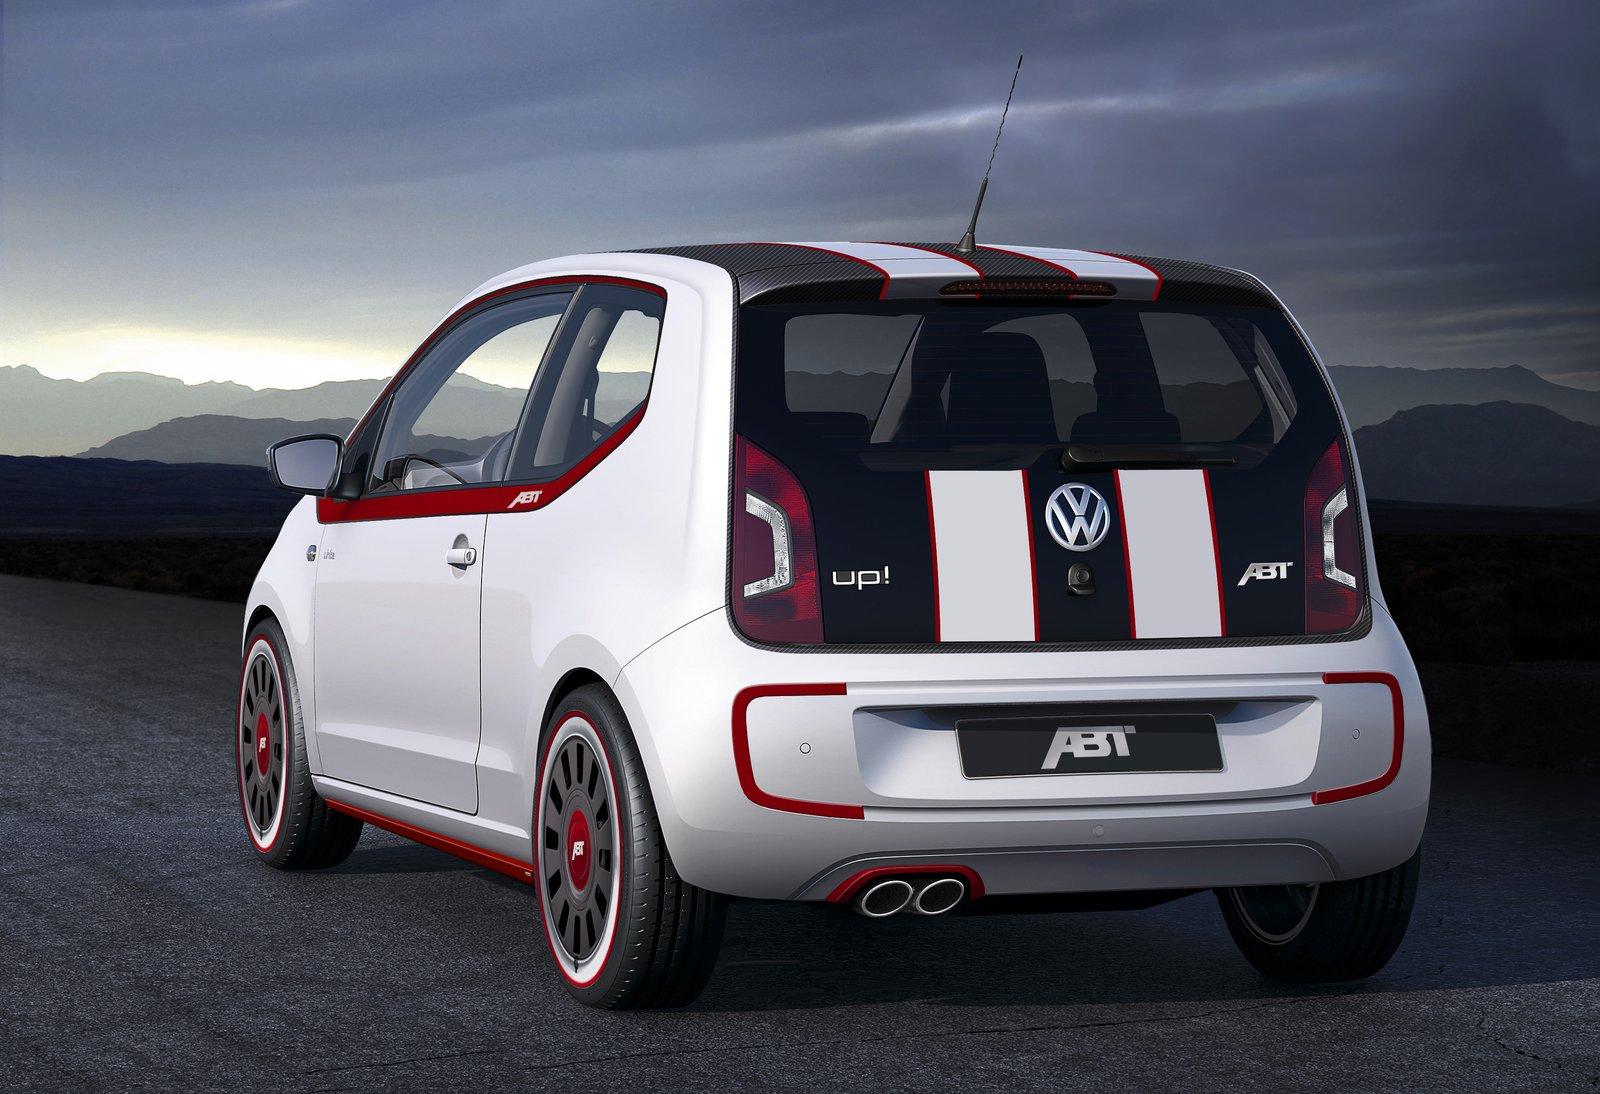 Αξεσουάρ για το Volkswagen up! από την Abt Sportsline - Autoblog.gr